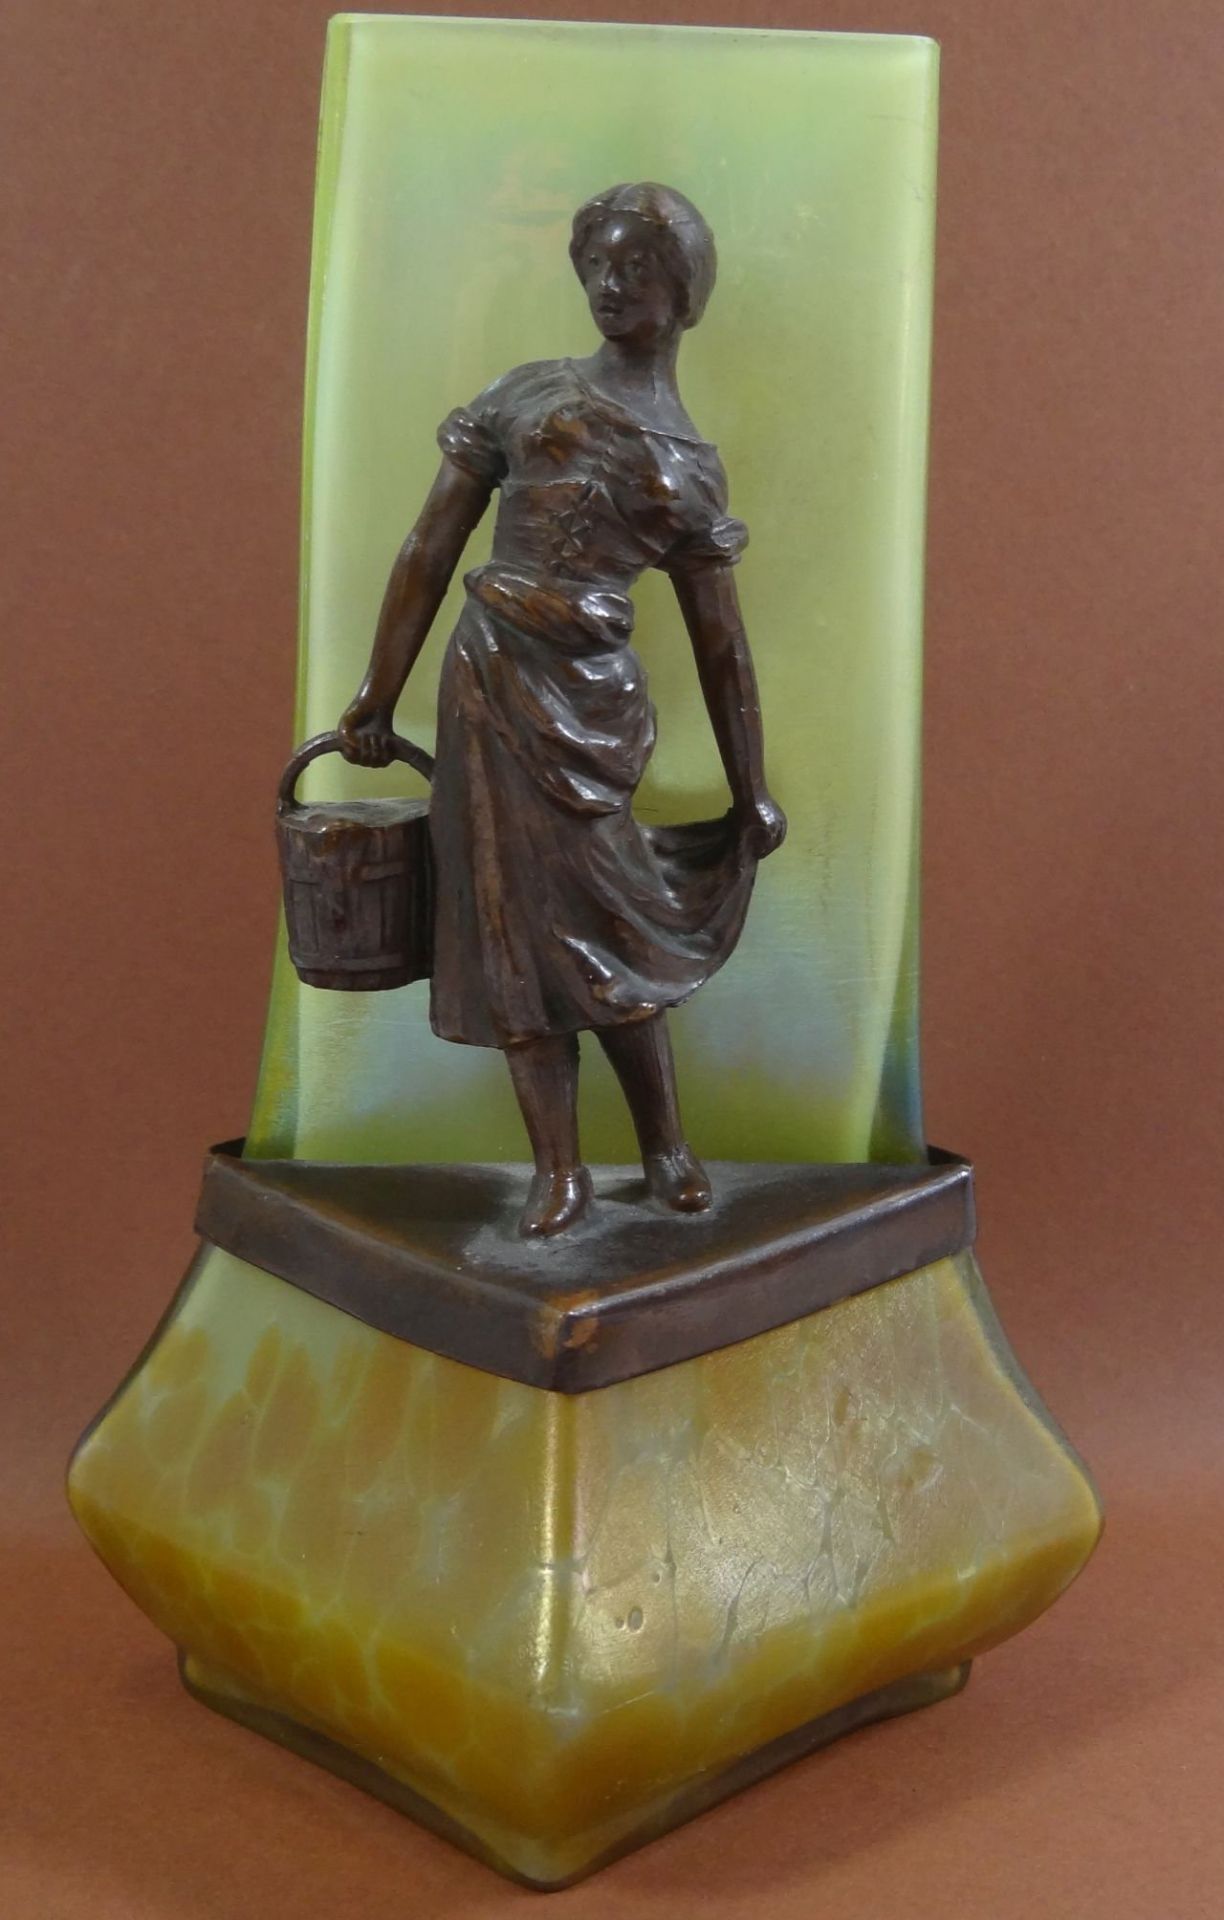 Jugendstil-Vase mit Bronze-Mädchen, H-15 cm, 7x8 cm, dreieckig, H-Bronze 9,5 cm, Rand mit kleinen